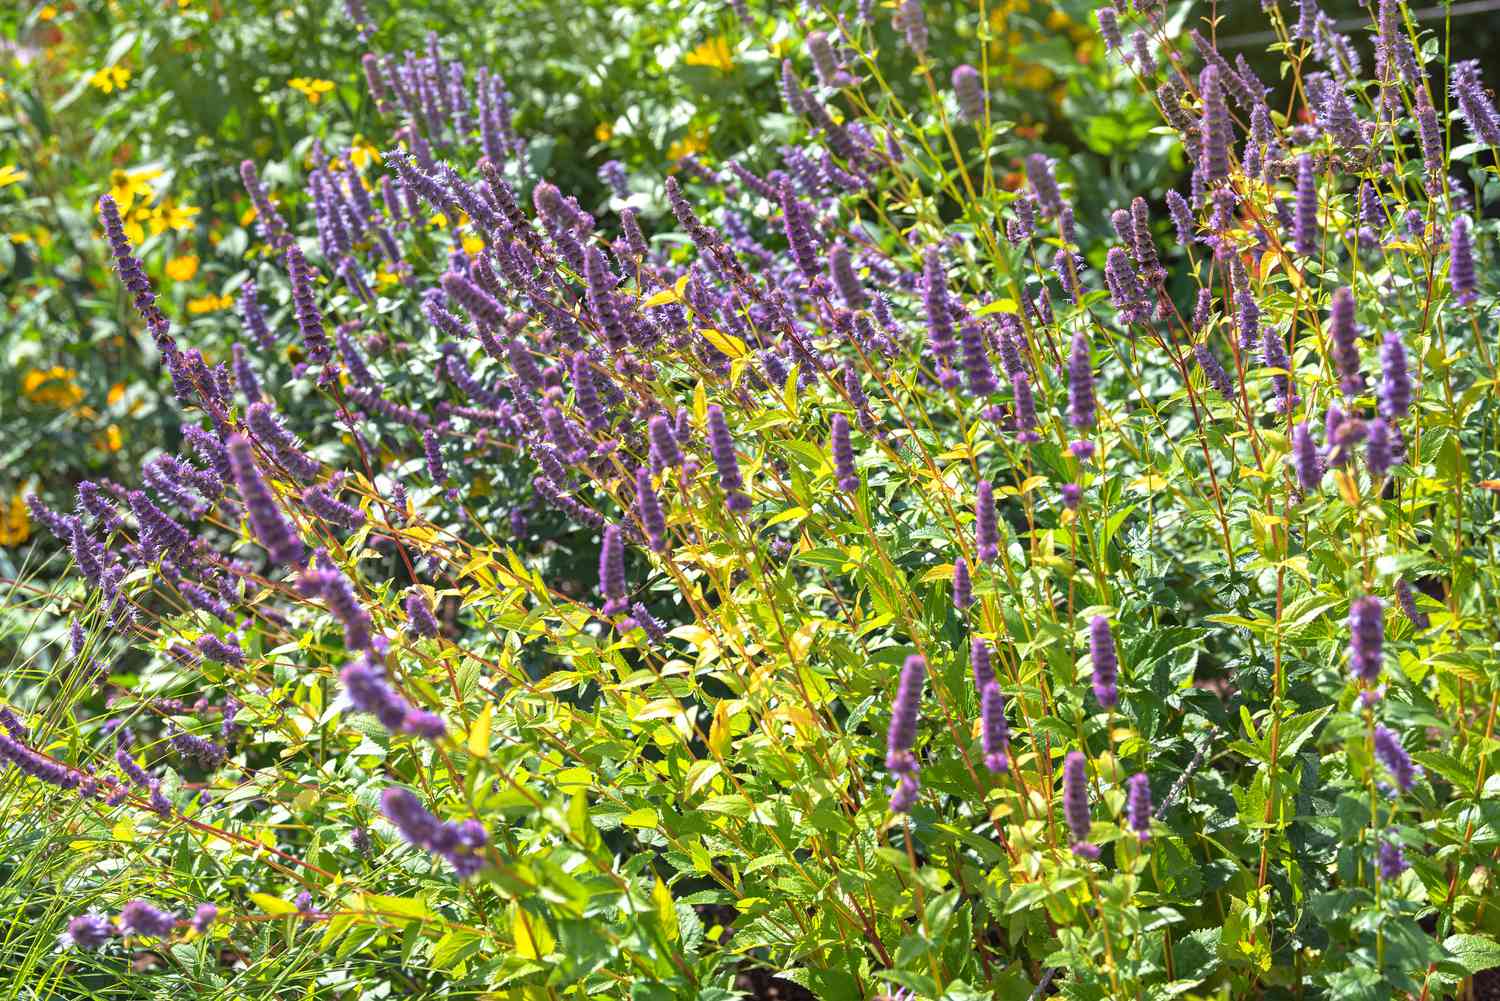 Anis-Hyssop mit violetten Blütenähren auf dünnen Stängeln, umgeben von gelb-grünen Blättern im Sonnenlicht